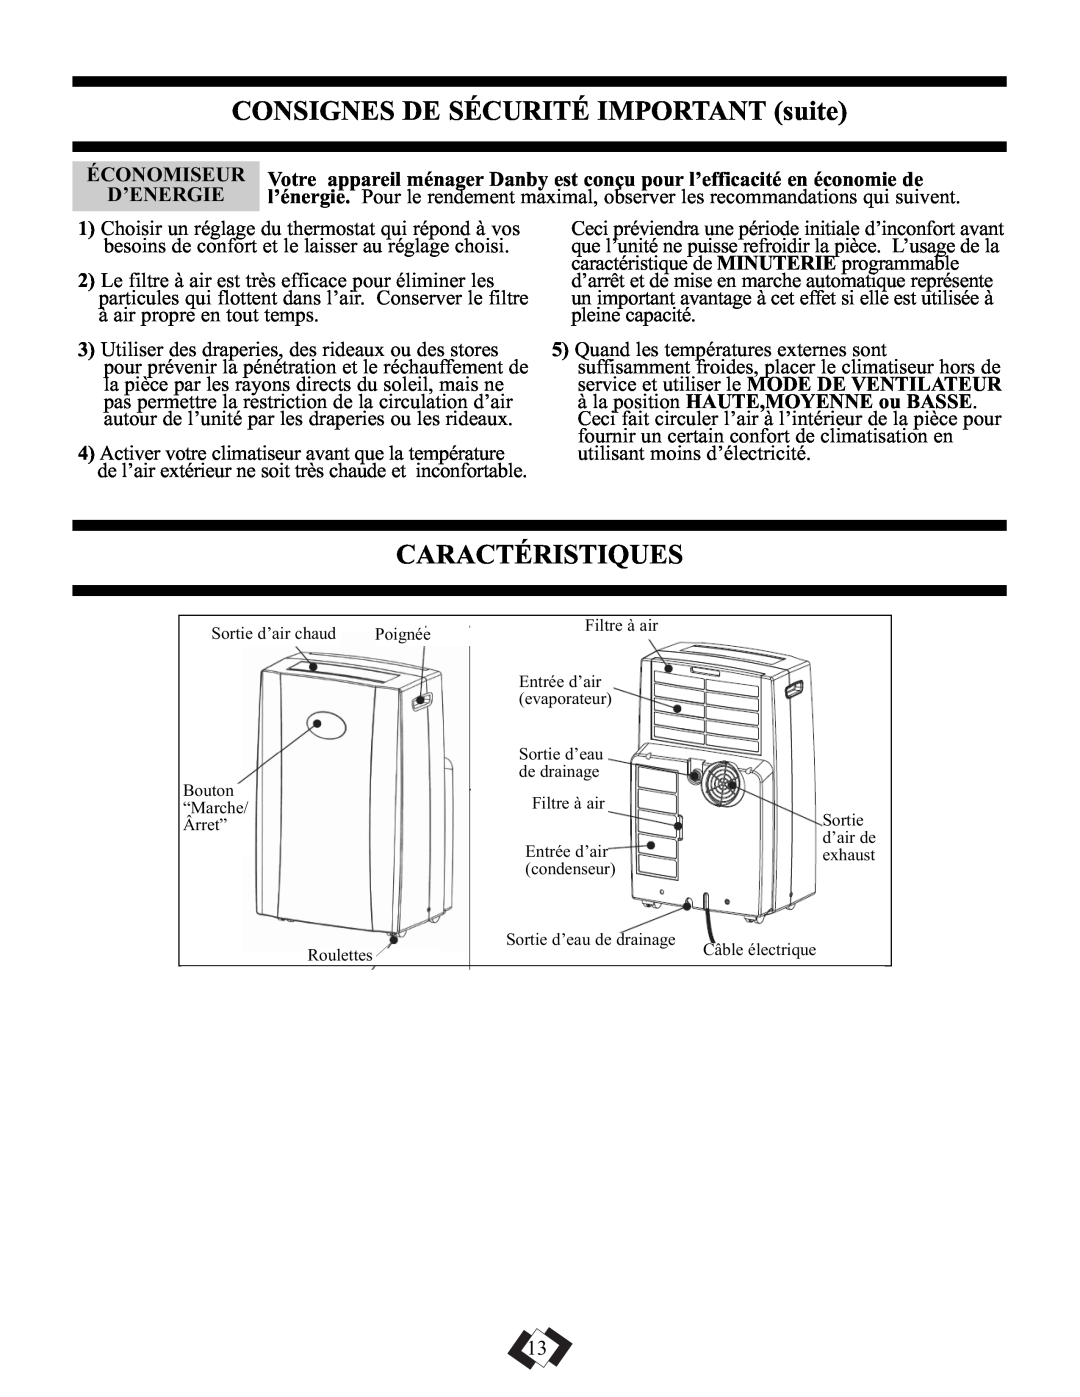 Danby DPAC5009 manual CONSIGNES DE SÉCURITÉ IMPORTANT suite, Caractéristiques, Économiseur, D’Energie 